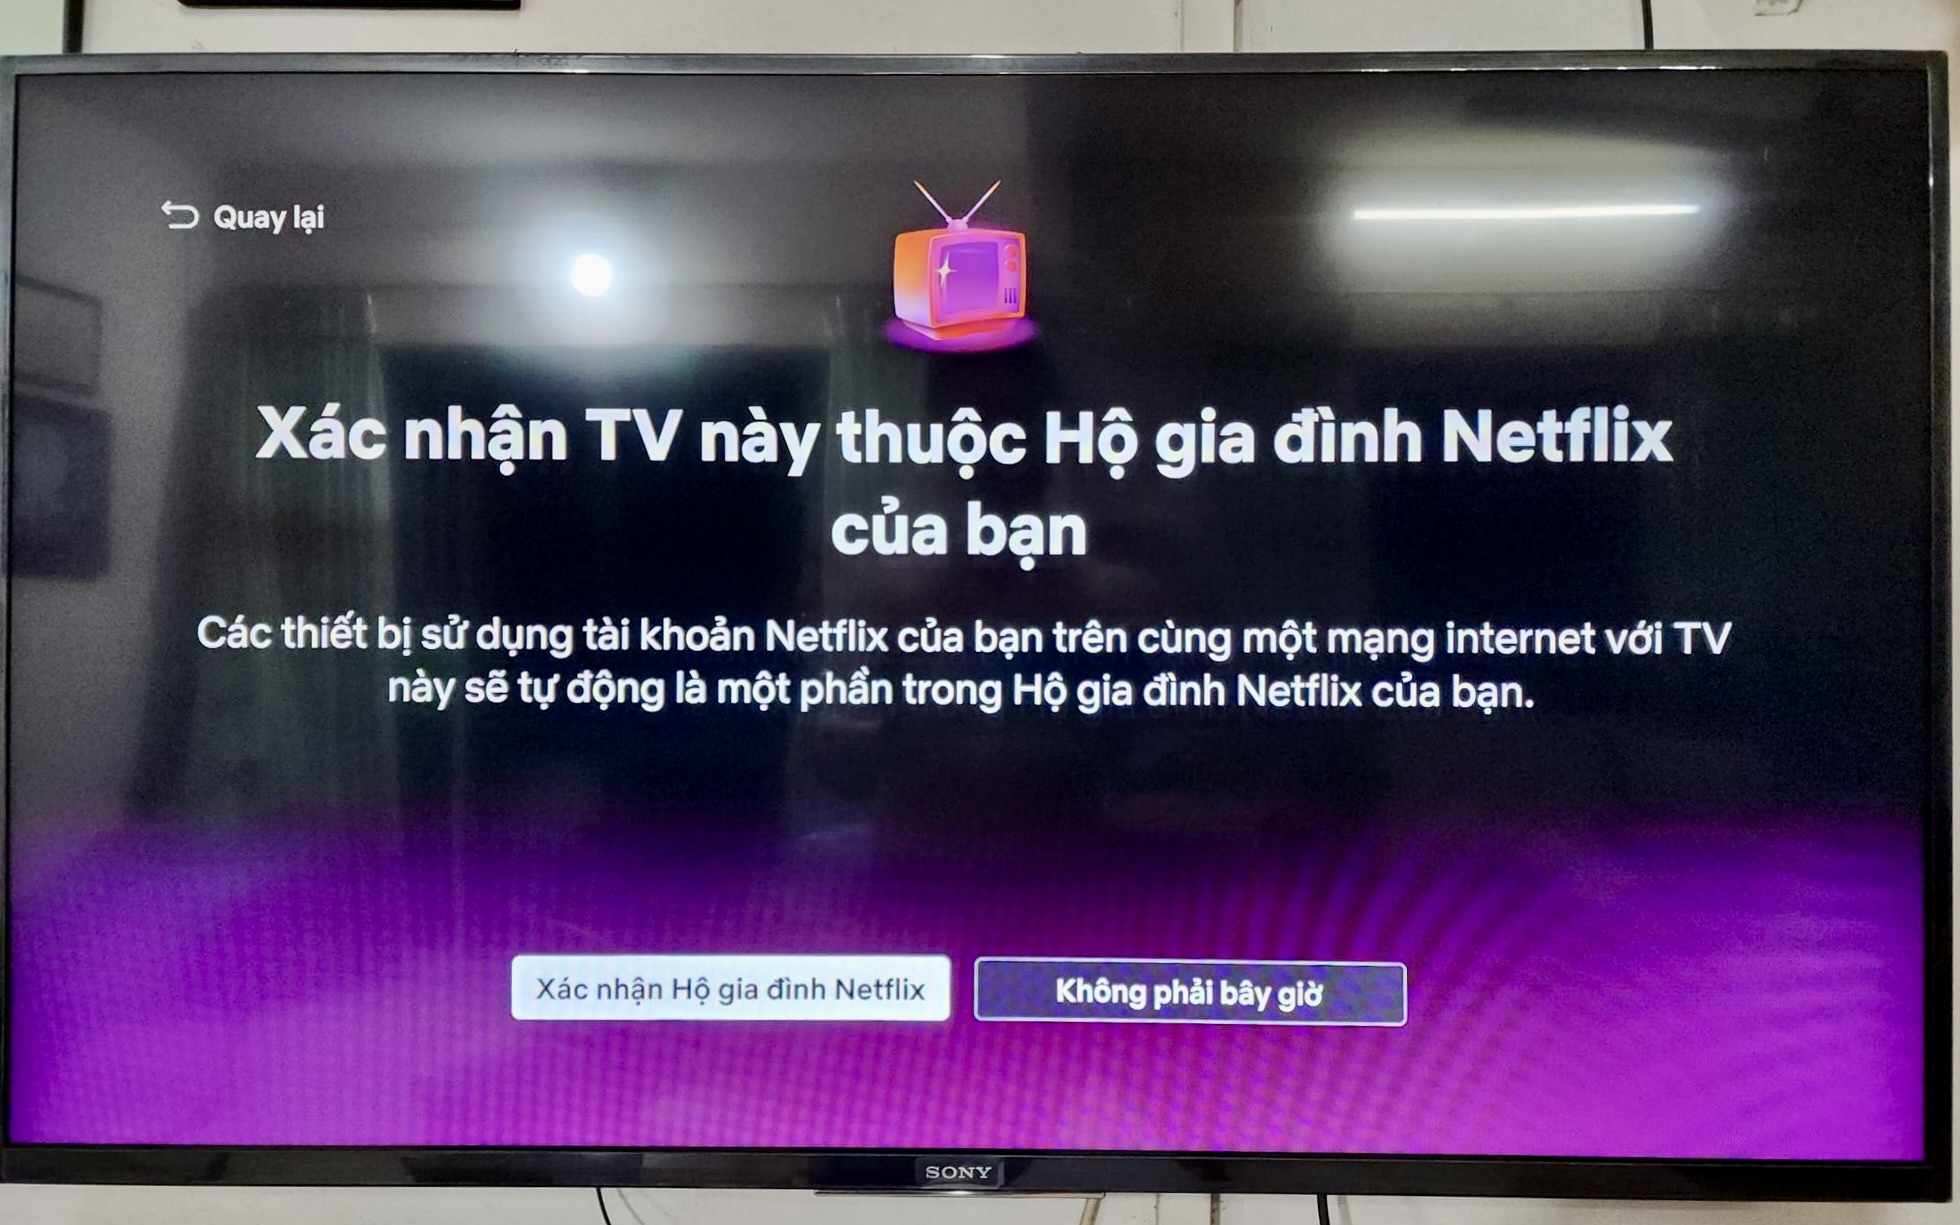 Giảm phiền phức với “TV của bạn không thuộc Hộ gia đình Netflix”